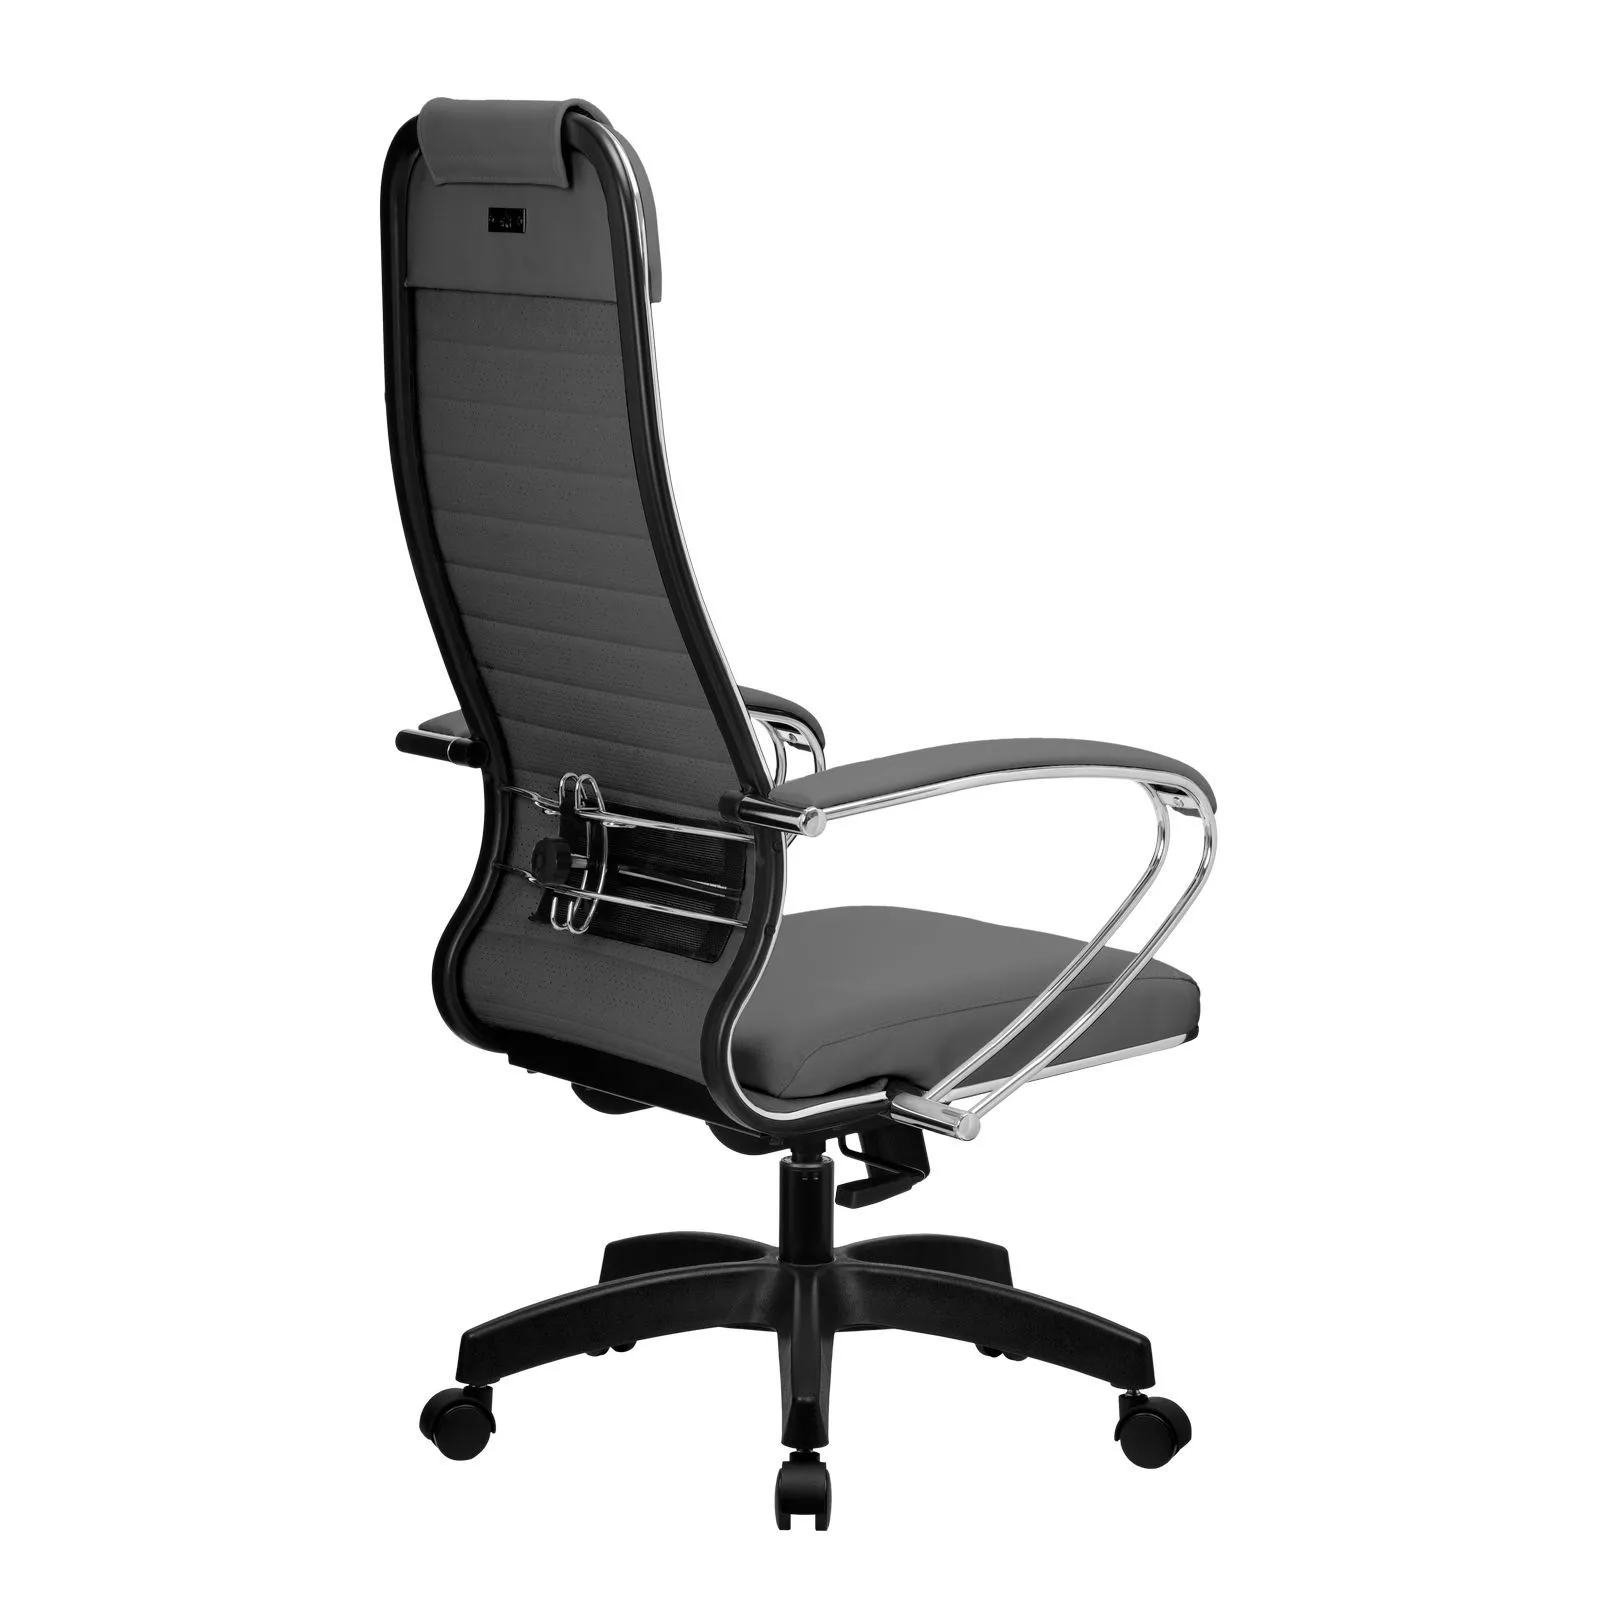 Кресло компьютерное Метта Комплект 6.1 Pl серый